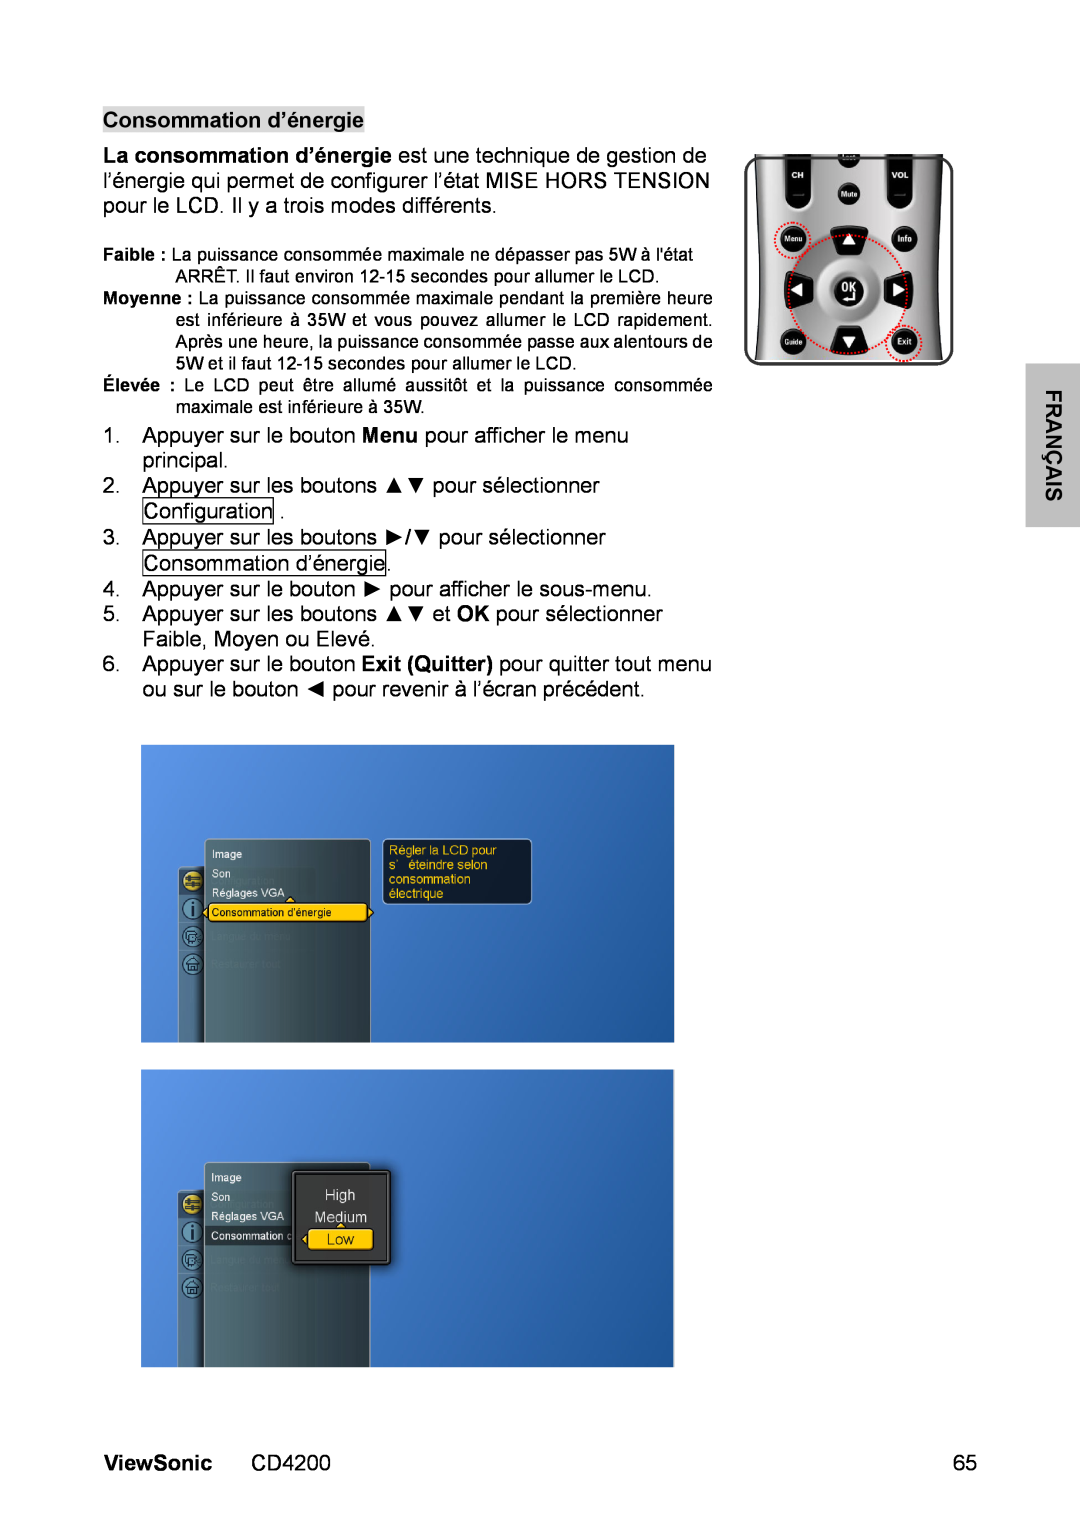 ViewSonic CD4200 manual Consommation d’énergie, Appuyer sur le bouton Menu pour afficher le menu principal, Français 